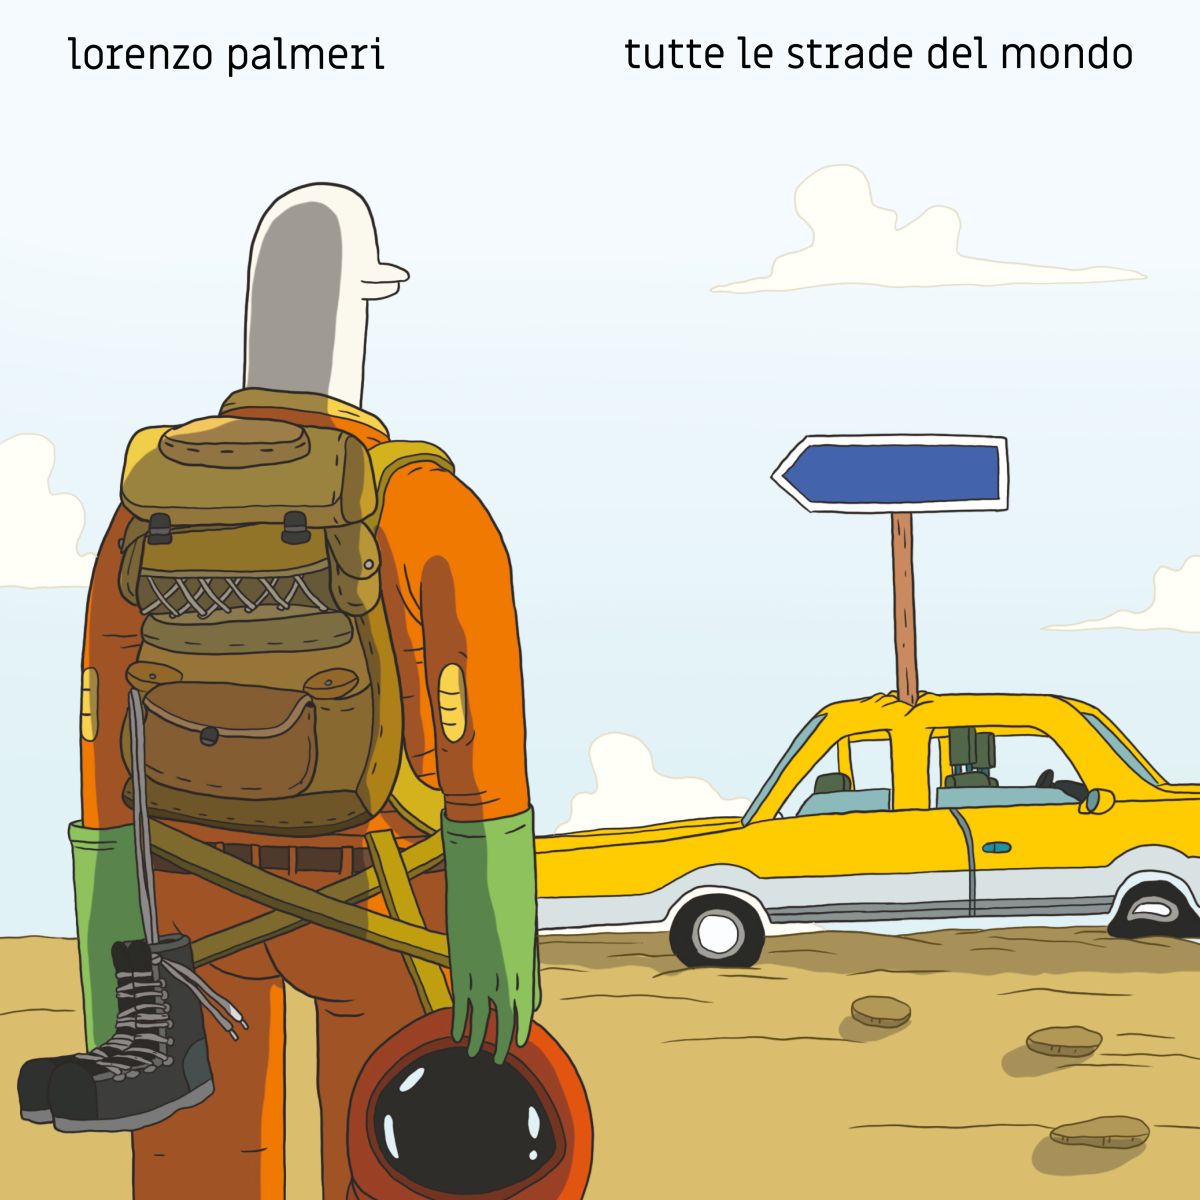 lorenzo-palmieri-album-e-tour---immagini-Tutte_le_strade_del_mondo_Cover_singolo_artwork_Adam_Tempesta_Lorenzo_Palmeri_b.jpg